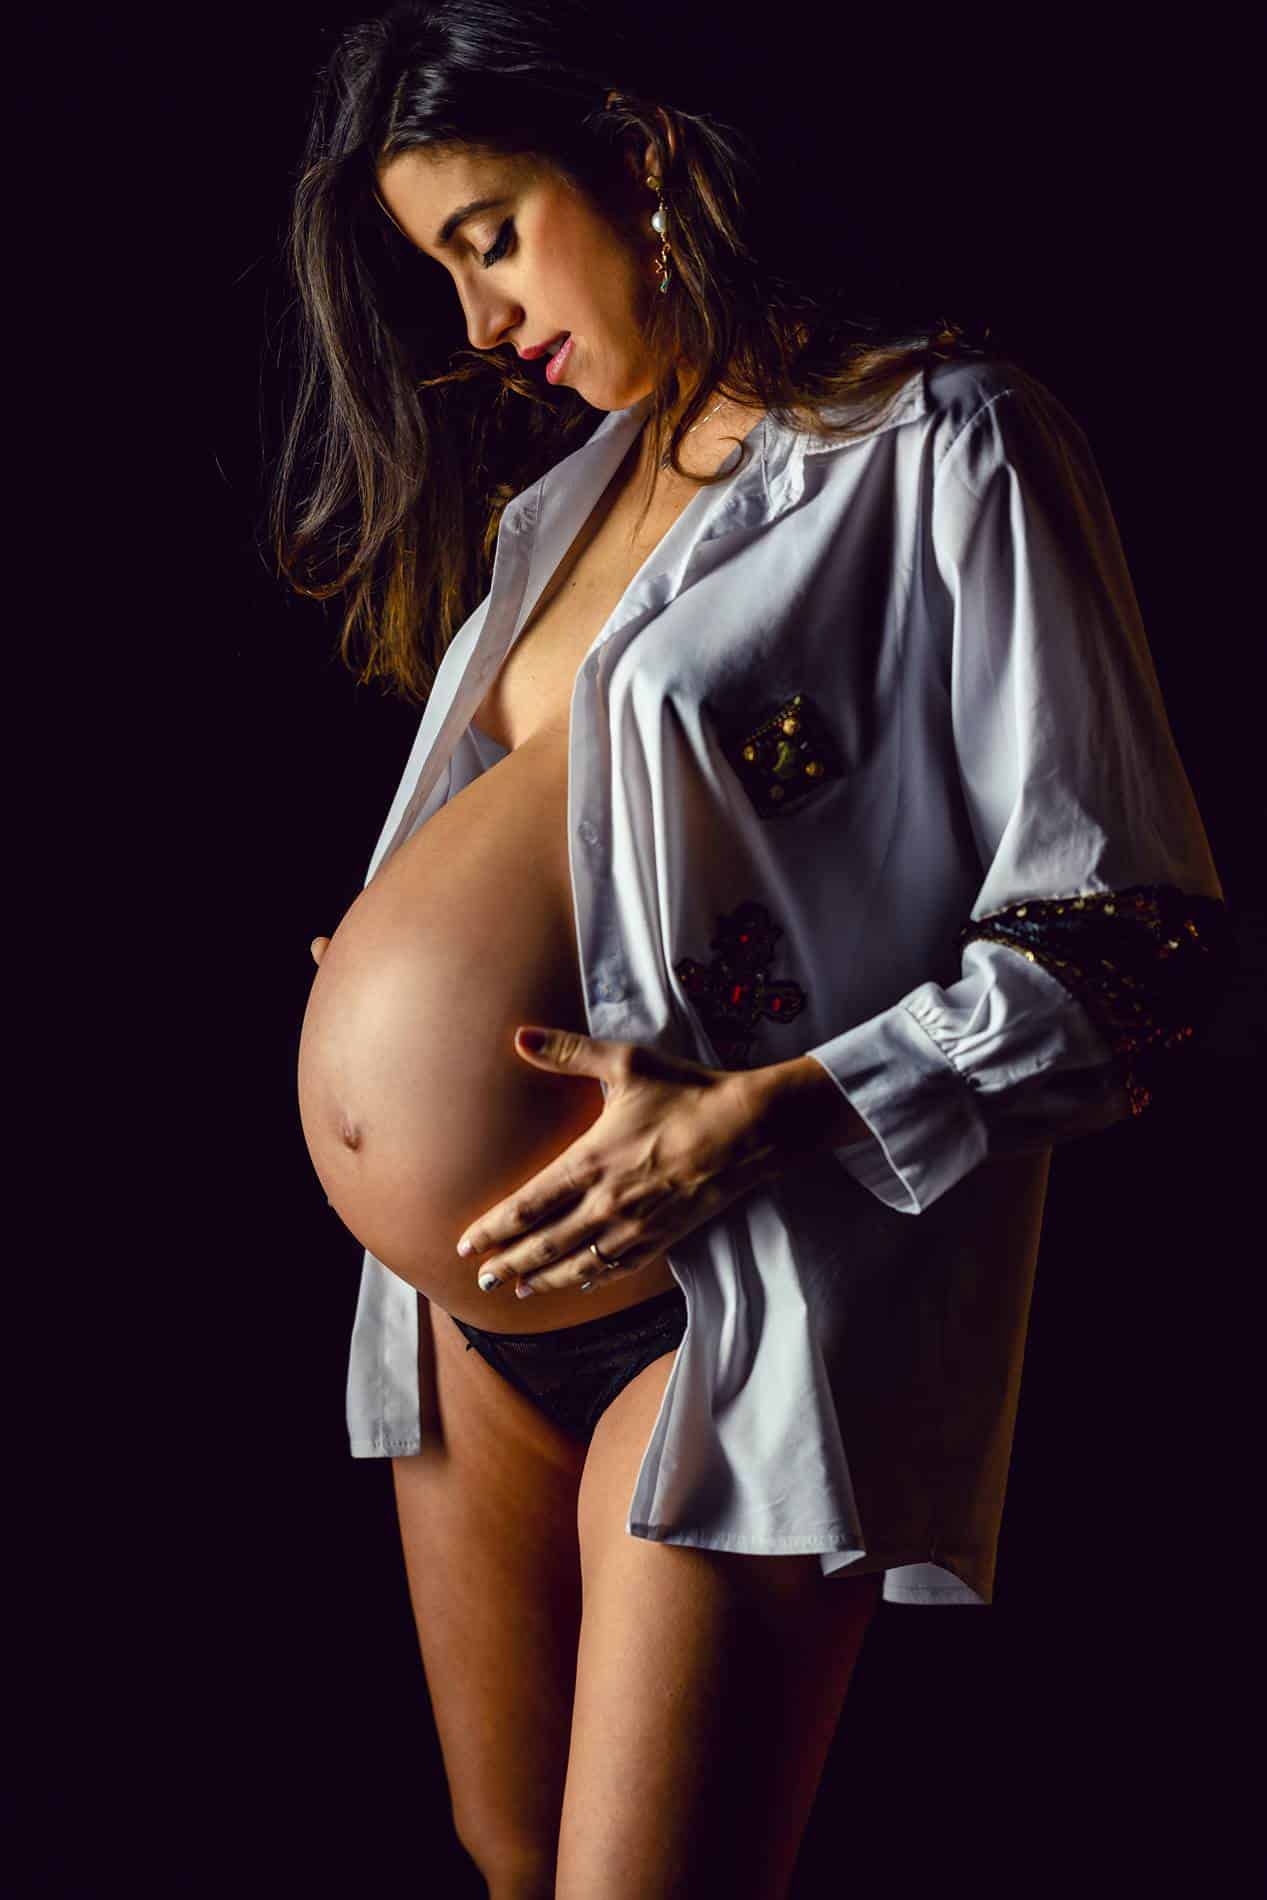 Sesión de fotos para embarazadas - Fotografía premamá - Sesión de fotos para embarazadas - Fotografía premamá -sesión de fotos embarazado desnuda